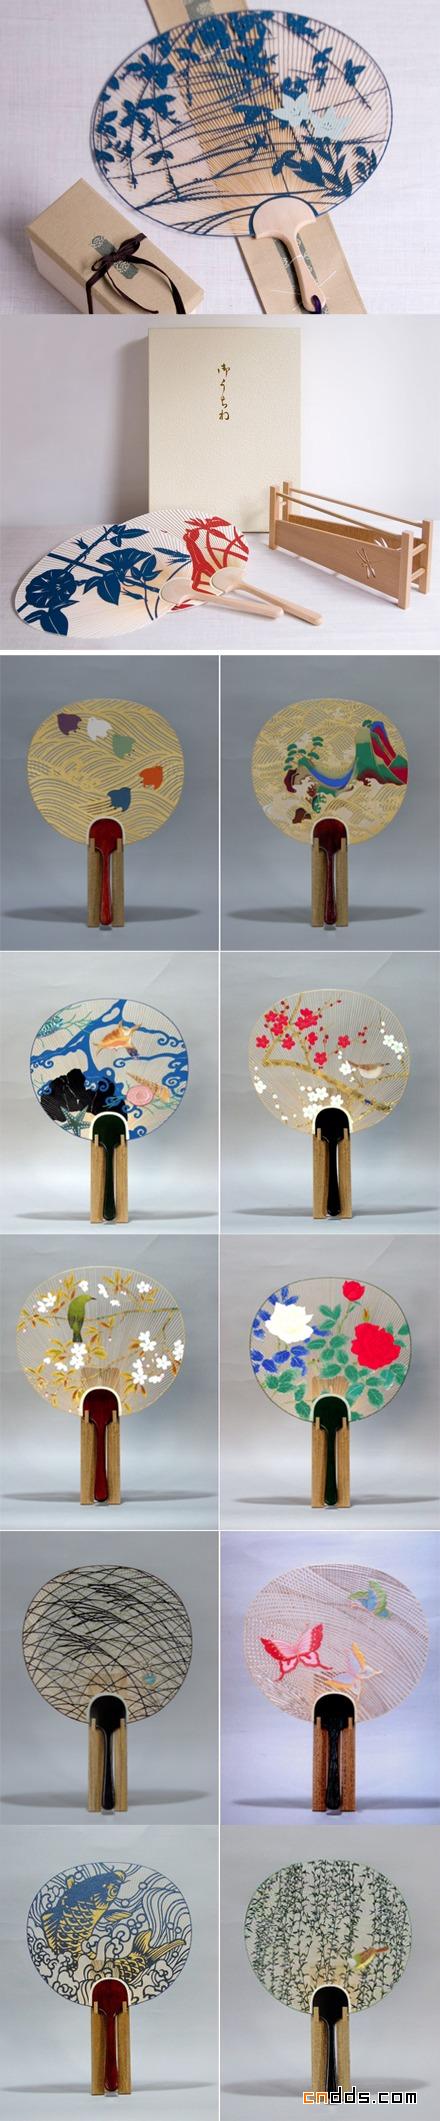 日本京都传统手工团扇